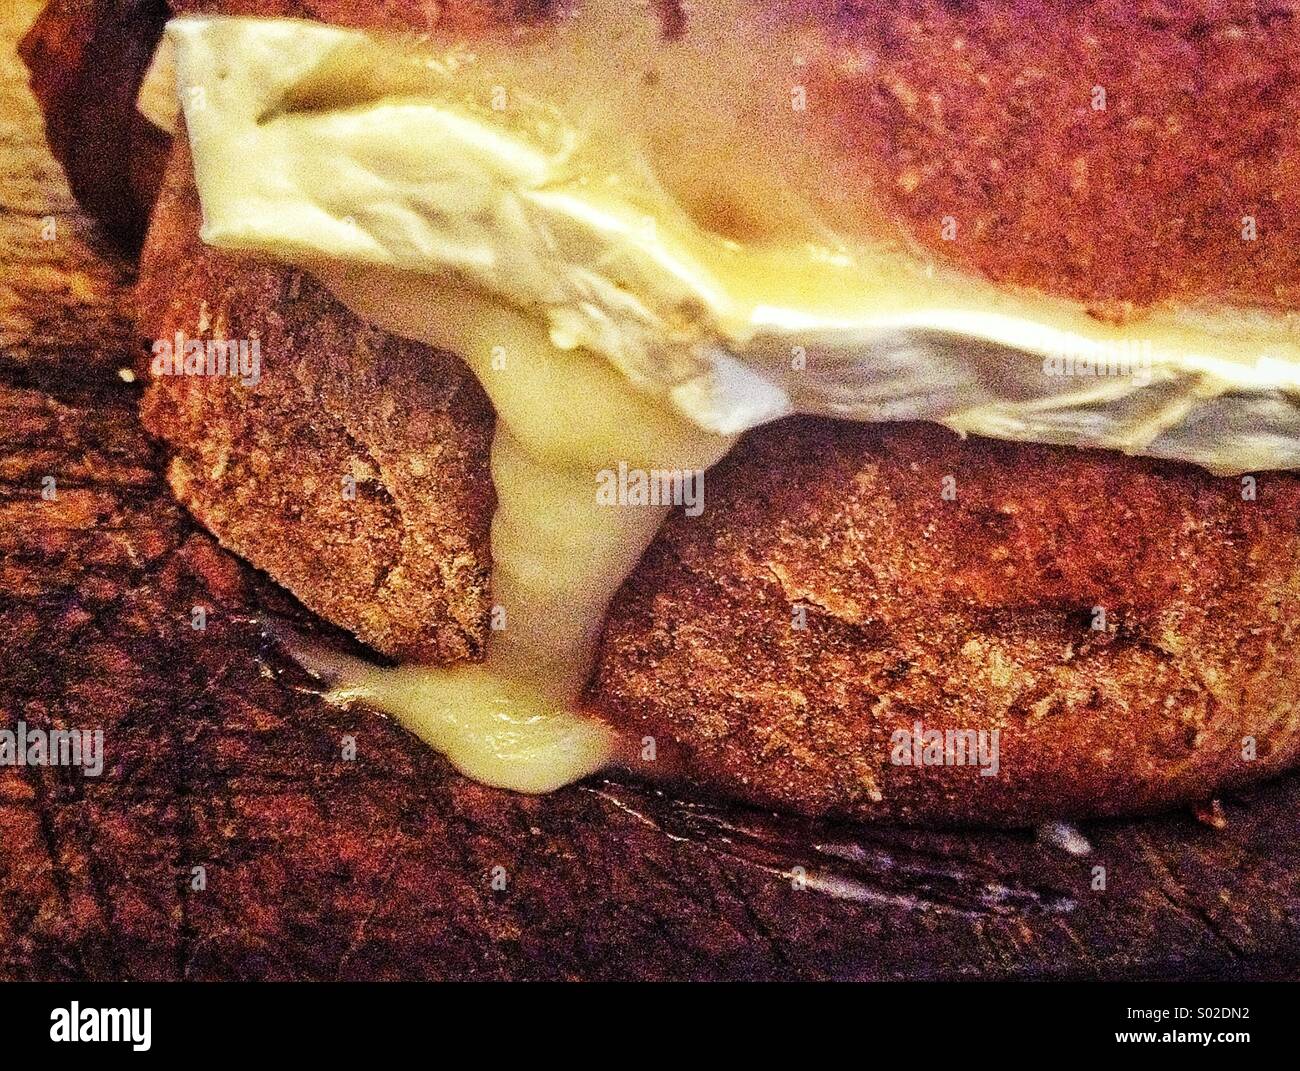 Ripe Brie on bread Stock Photo